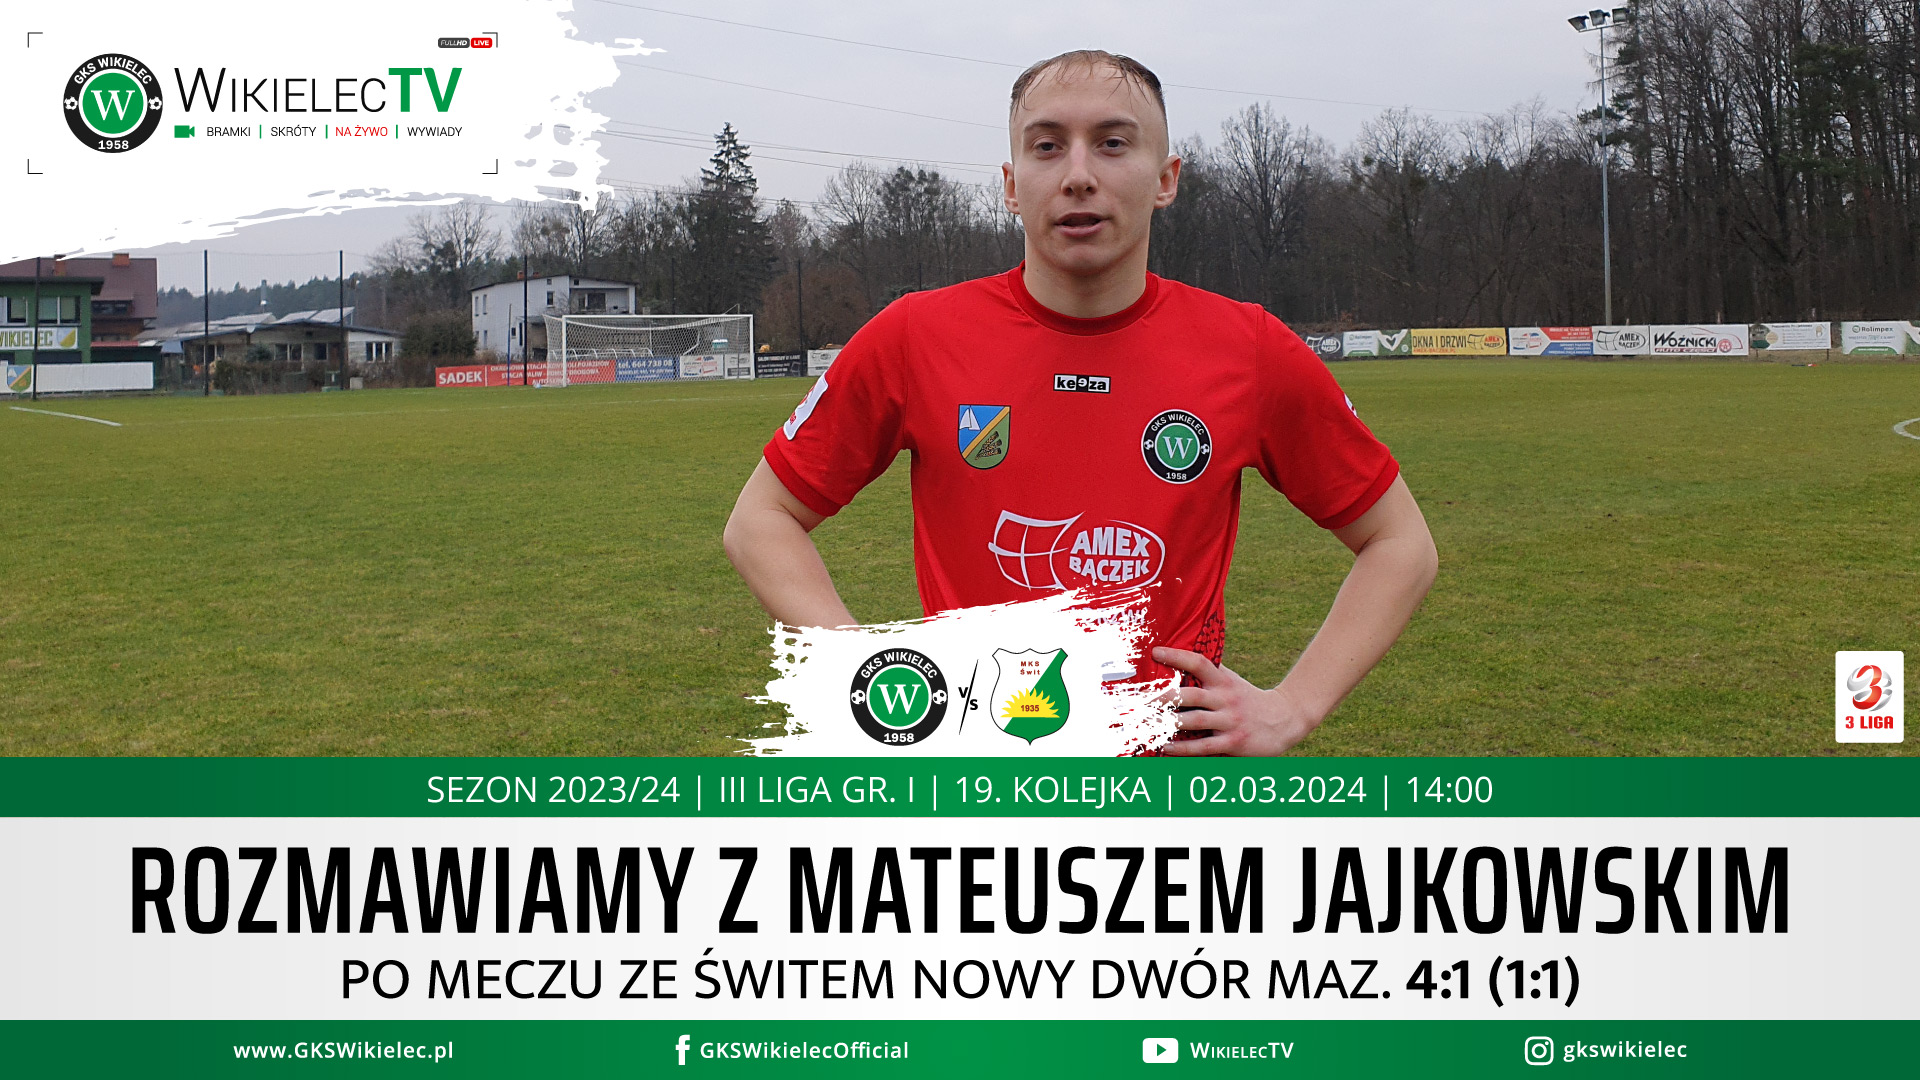 WikielecTV: Mateusz Jajkowski o meczu ze Świtem